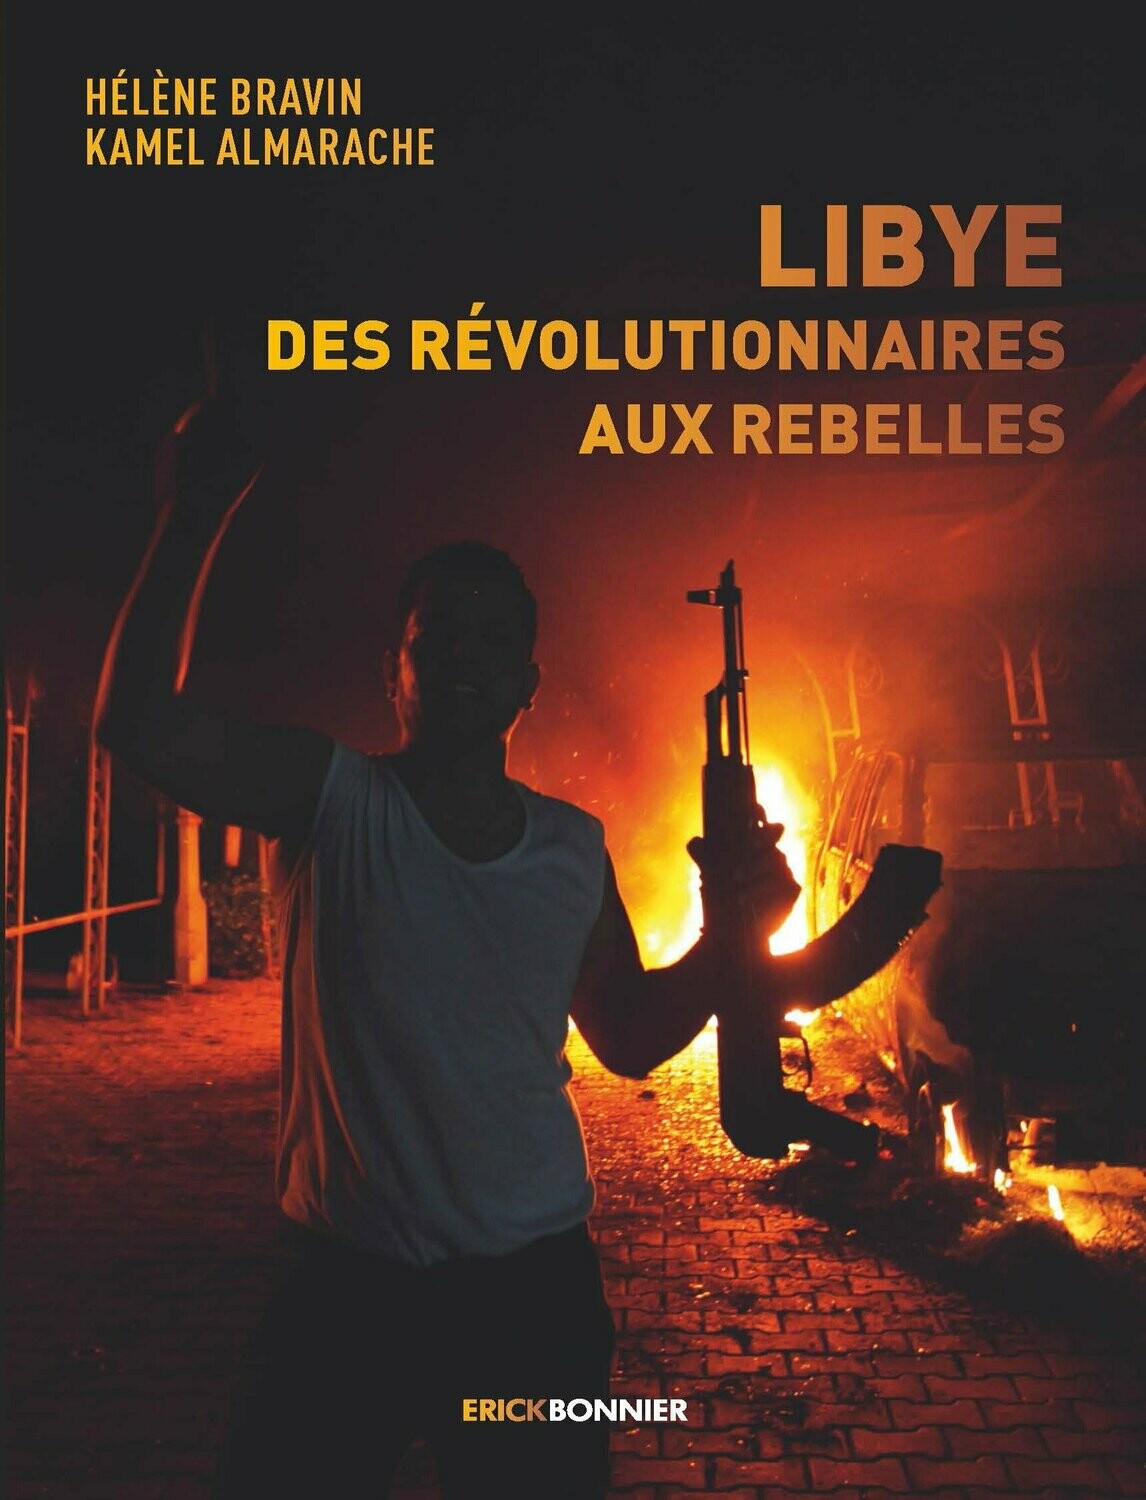 LIBYE, DES RÉVOLUTIONNAIRES AUX REBELLES